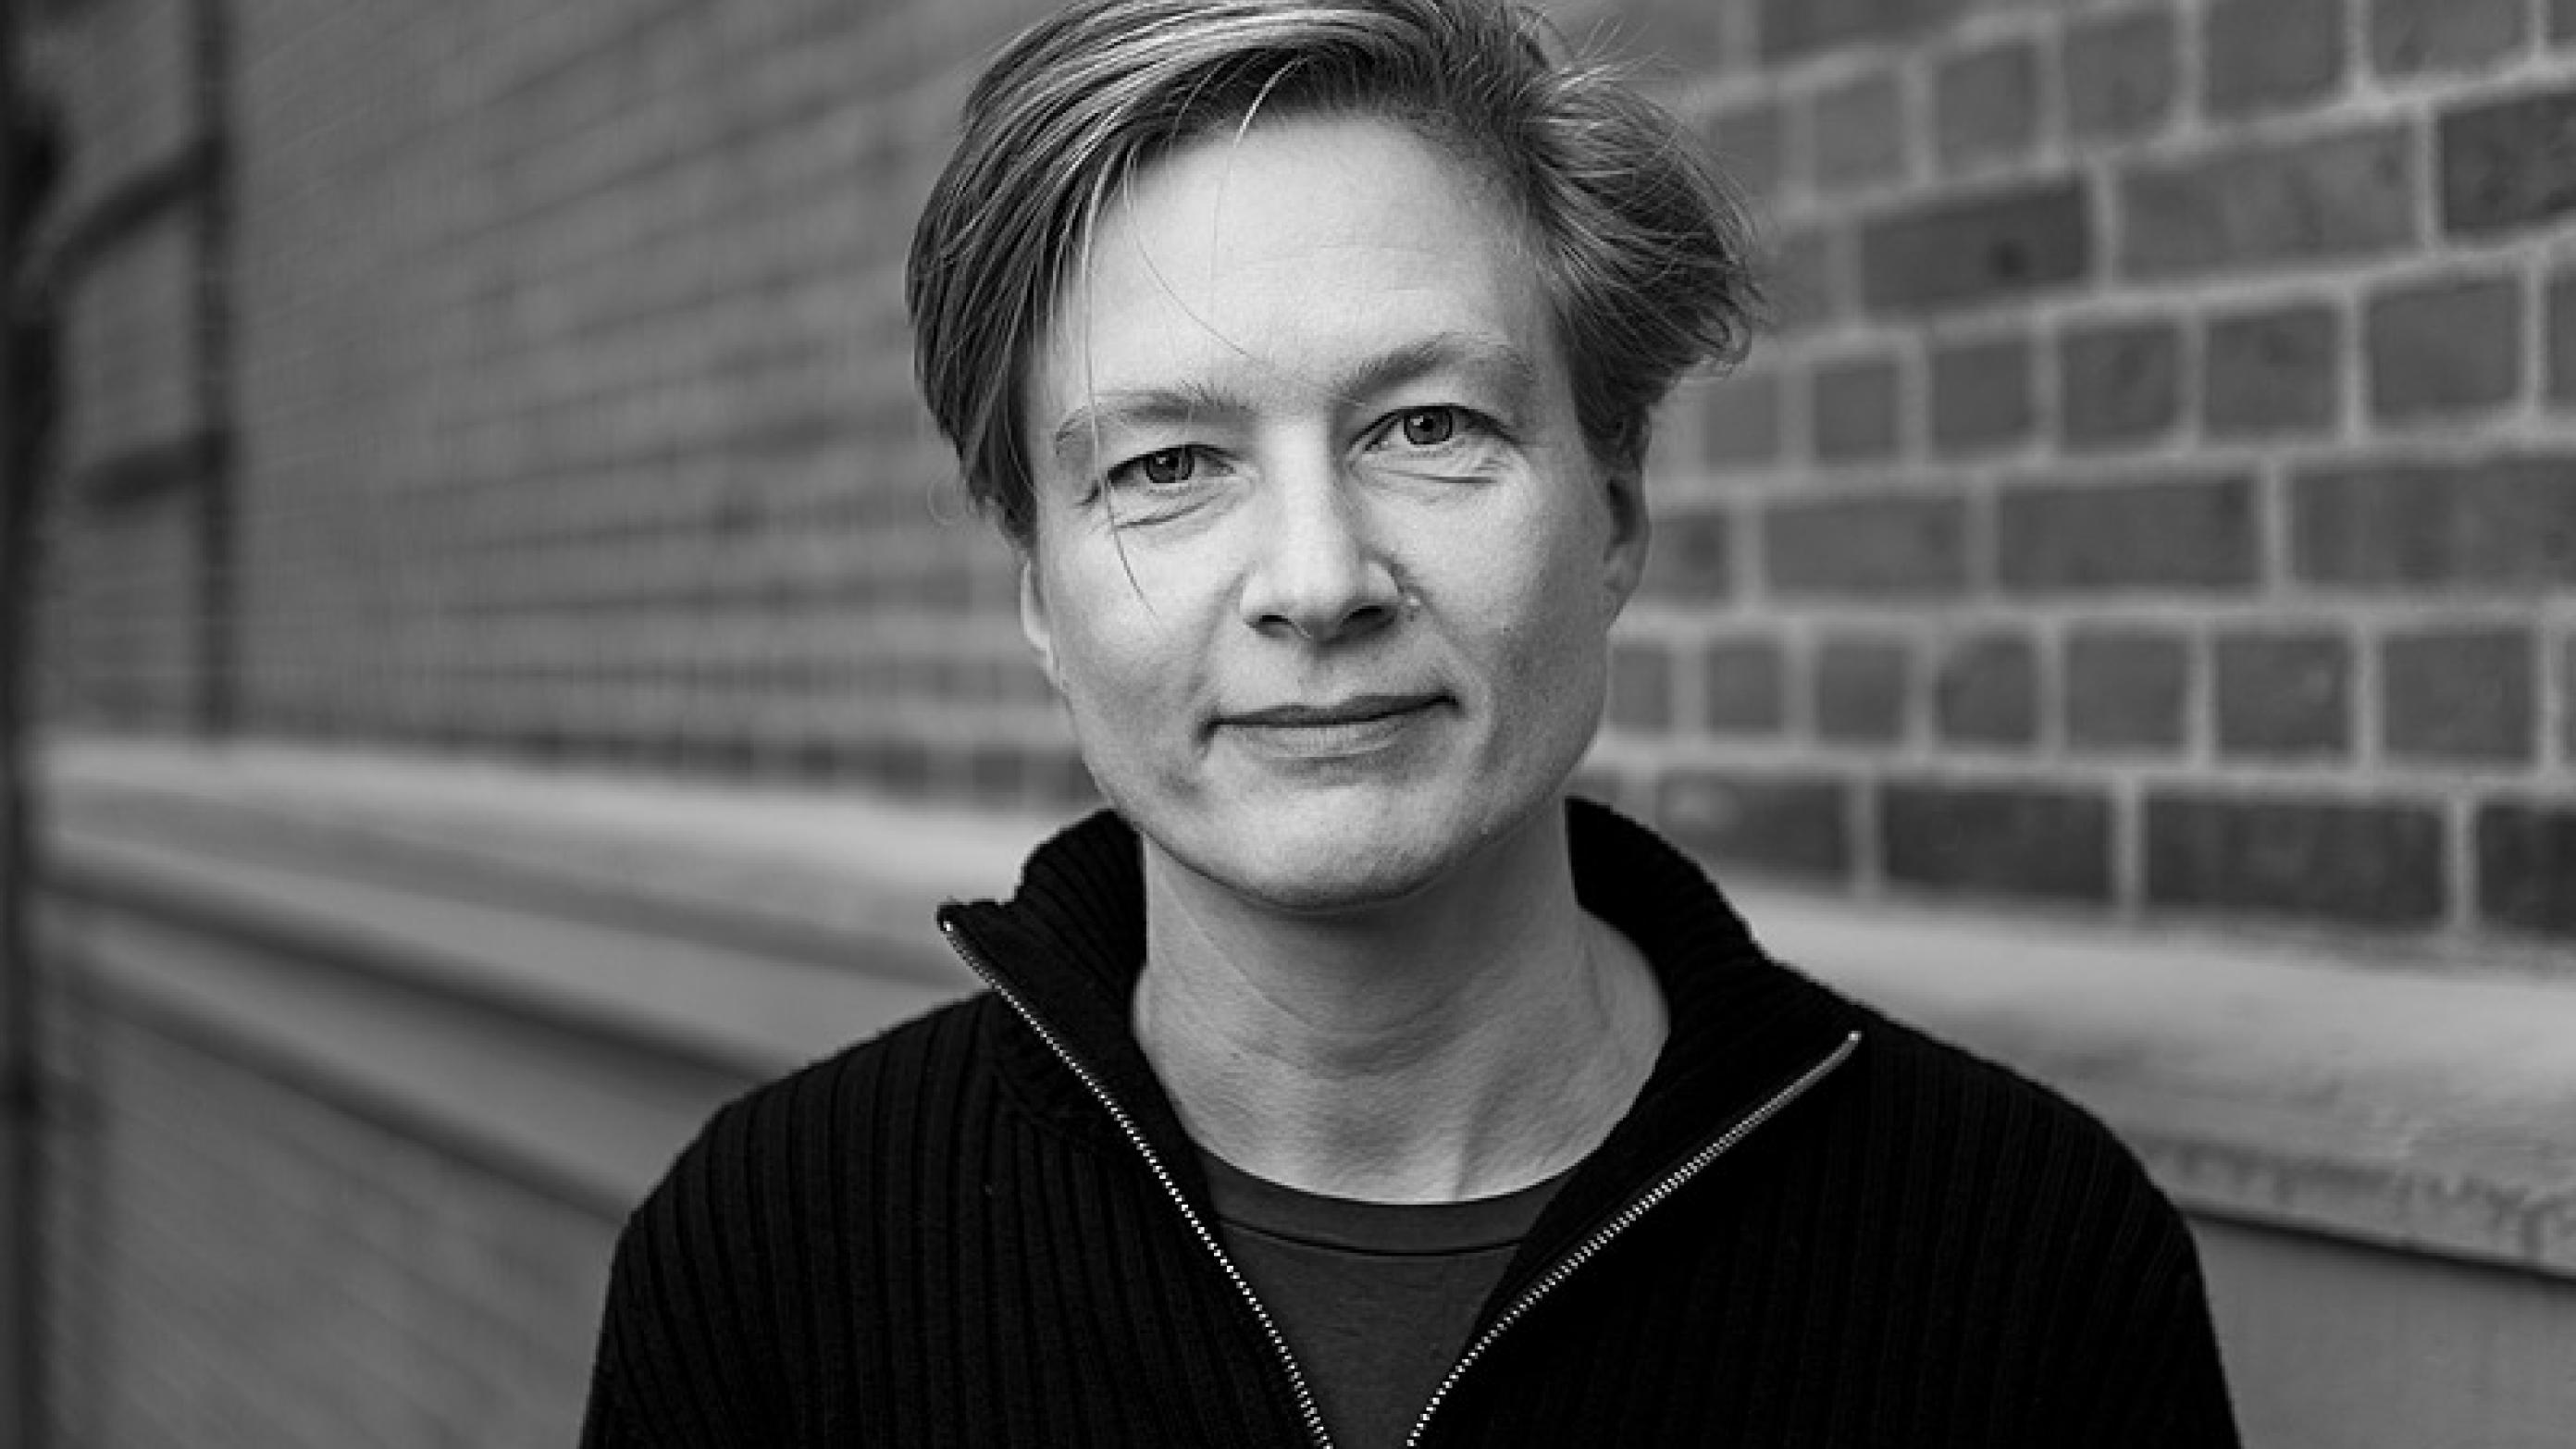 Yngre lægers nye formand, Helga Schultz, blev onsdag den 28. november 2018 valgt ved repræsentantskabsmødet på Hotel Koldingfjord. ©2018 Palle Peter Skov